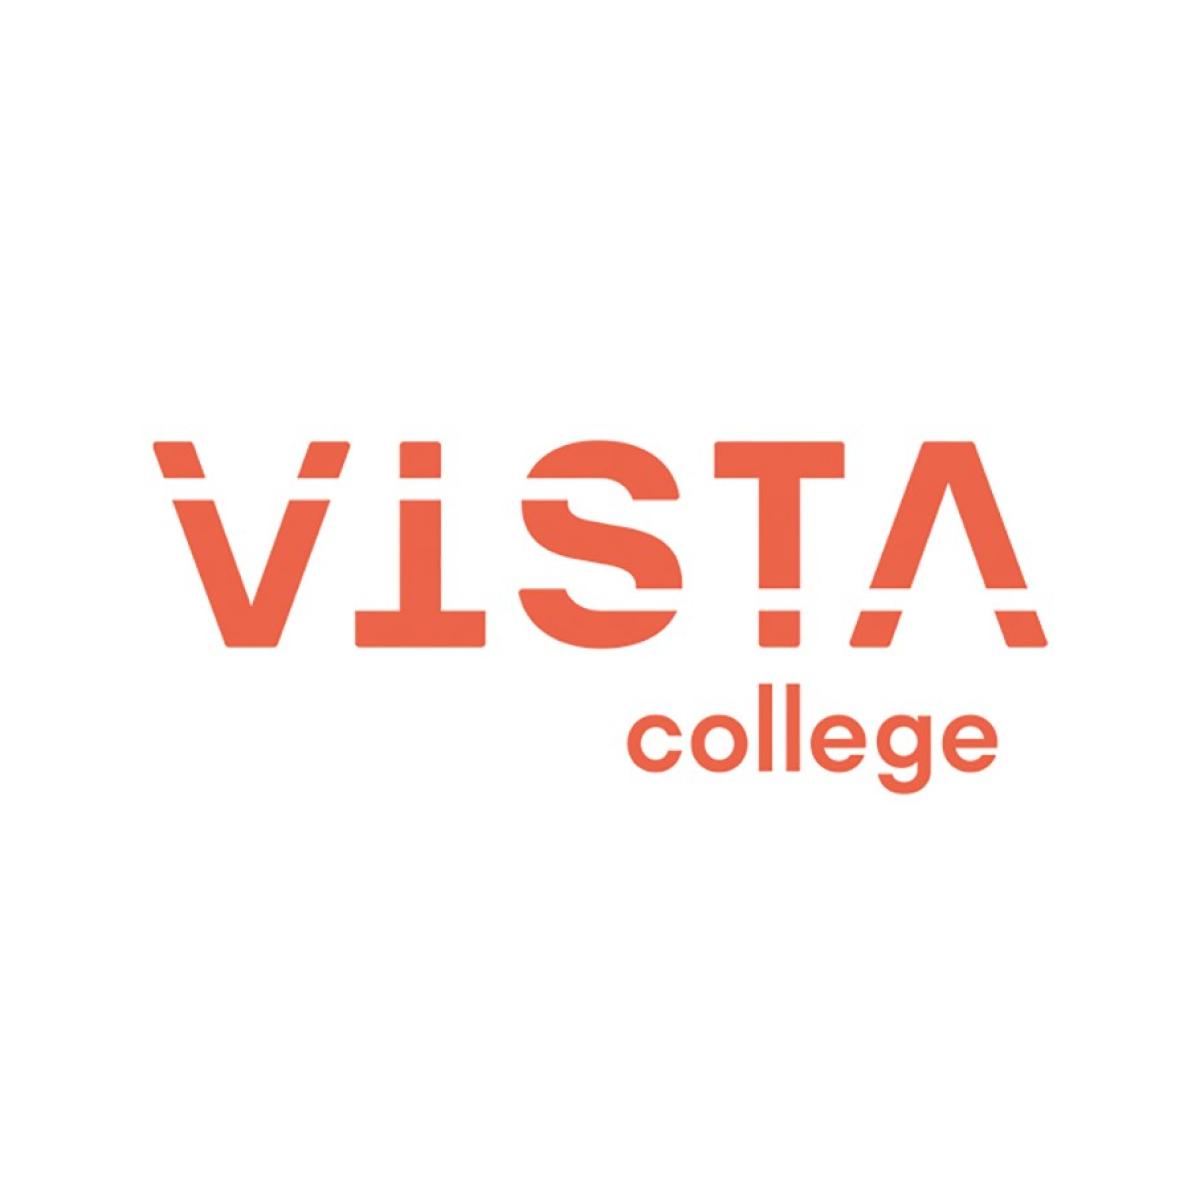 Vista college hp